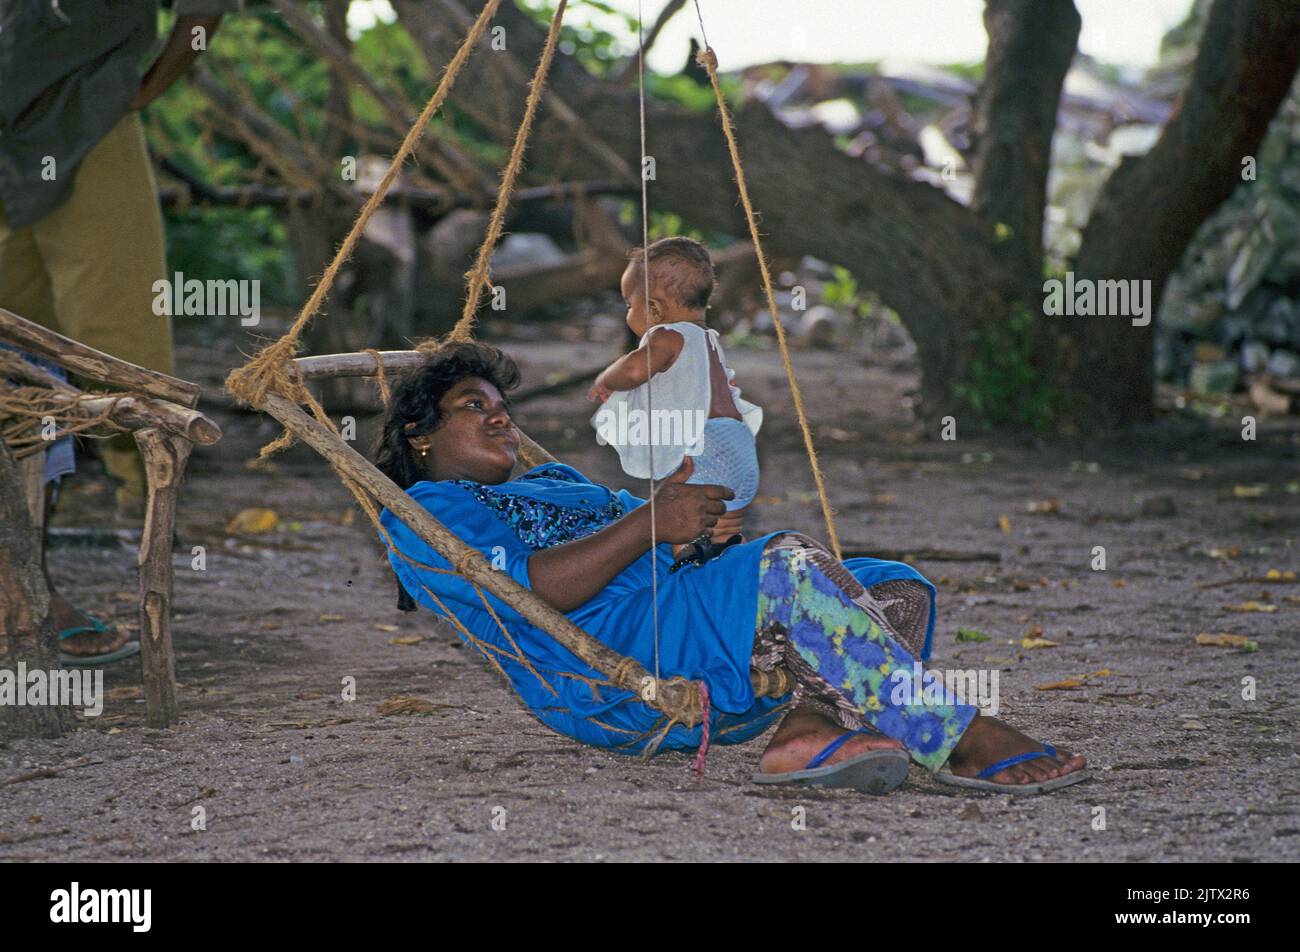 Maledivische Frau mit ihrem Baby auf einer Schaukel, Einheimischen-Insel Mahembadhoo, Malediven, Indischer Ozean, Asien | Mujer maldiva con su bab Foto de stock